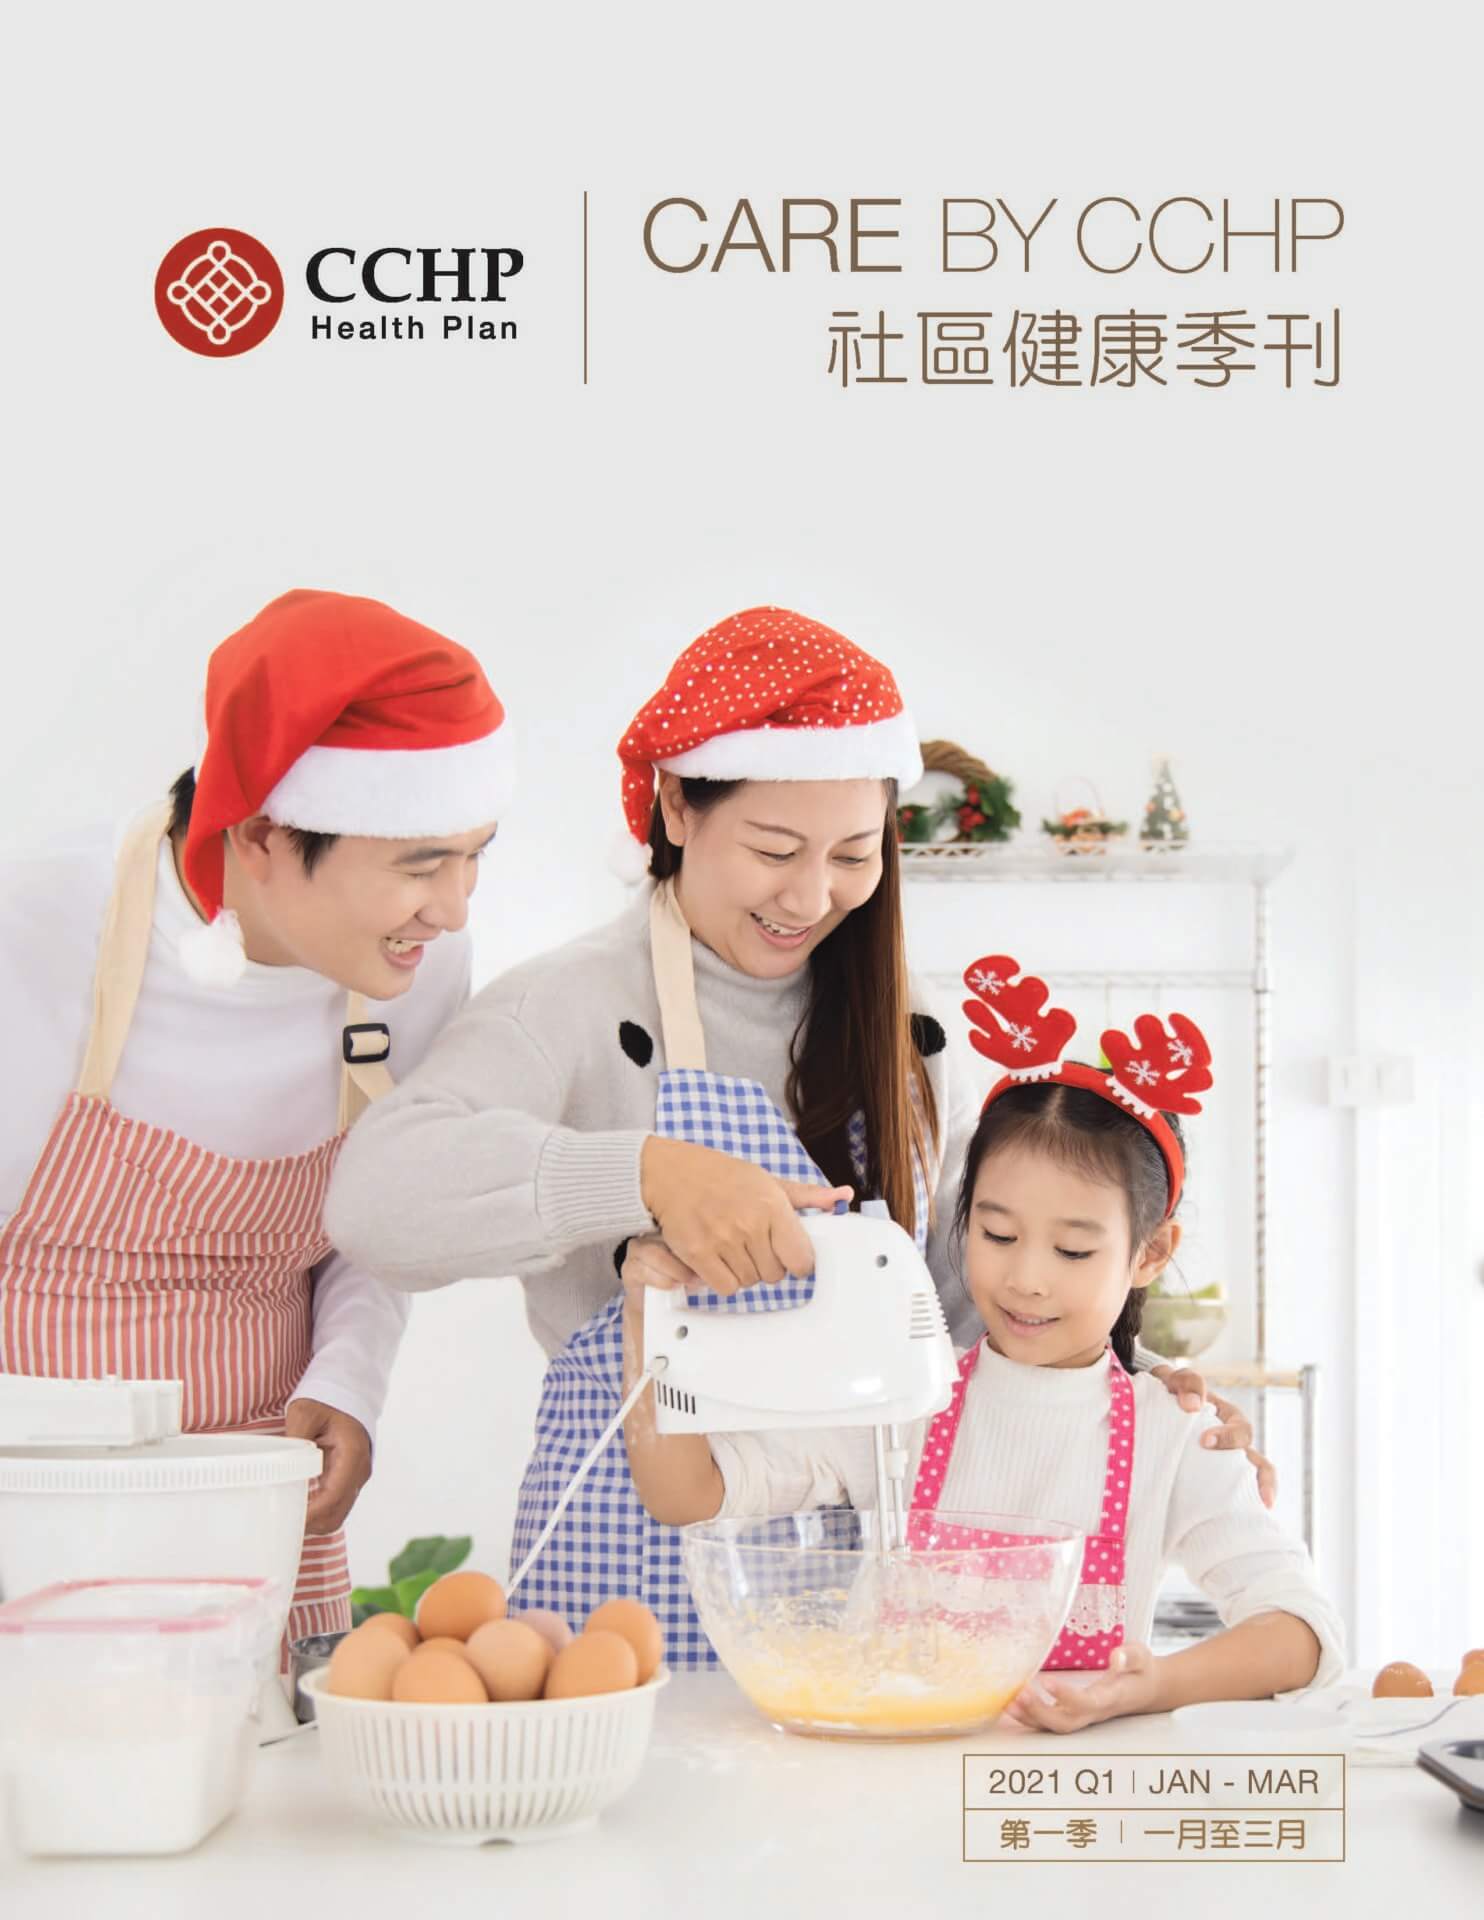 CCHP 2021 q3 newsletter cover, family making bakery in chritsmas